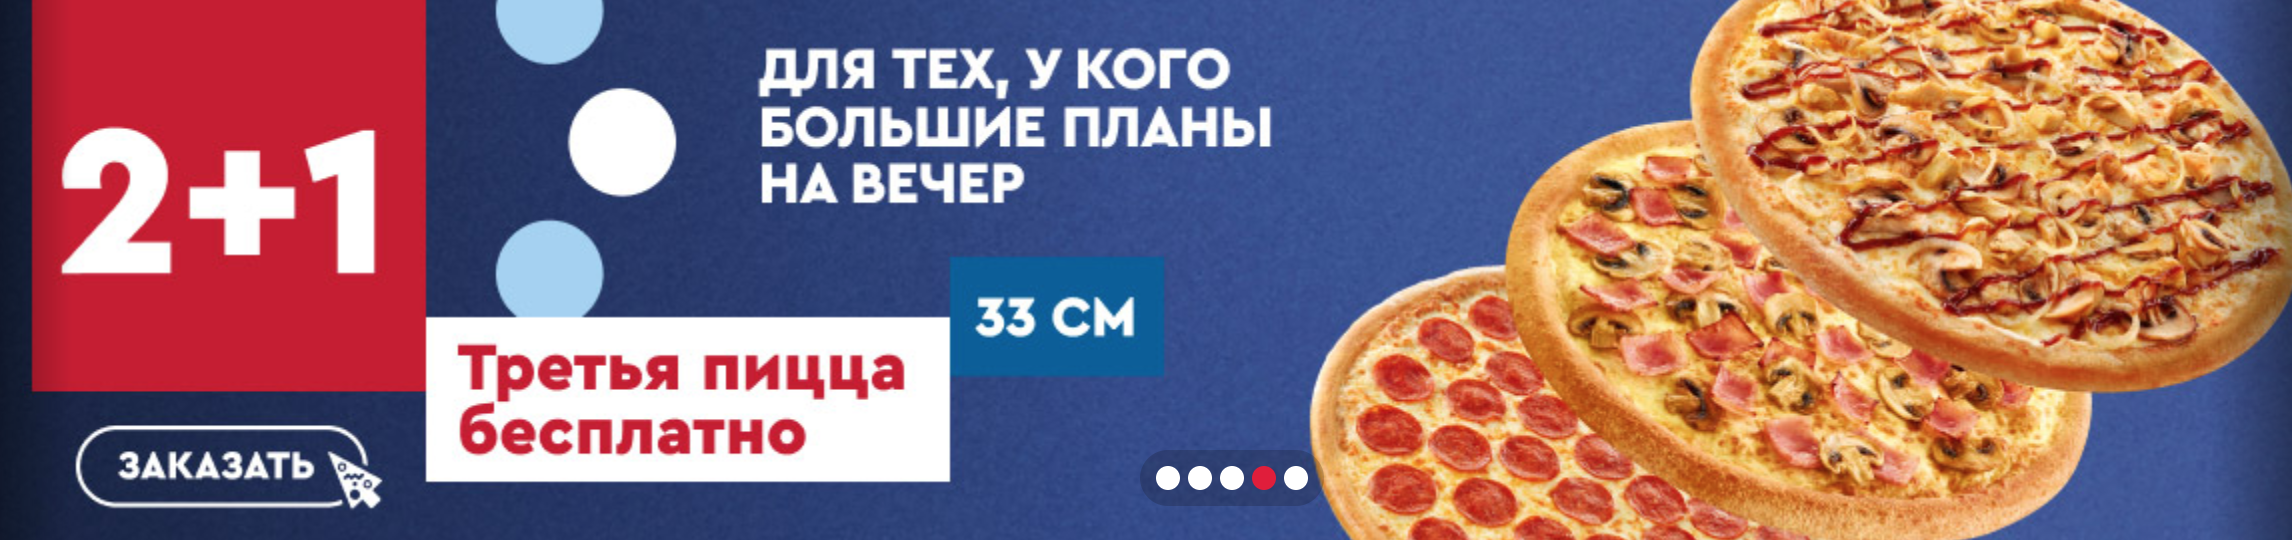 Пример повышения среднего чека — третья пицца бесплатно